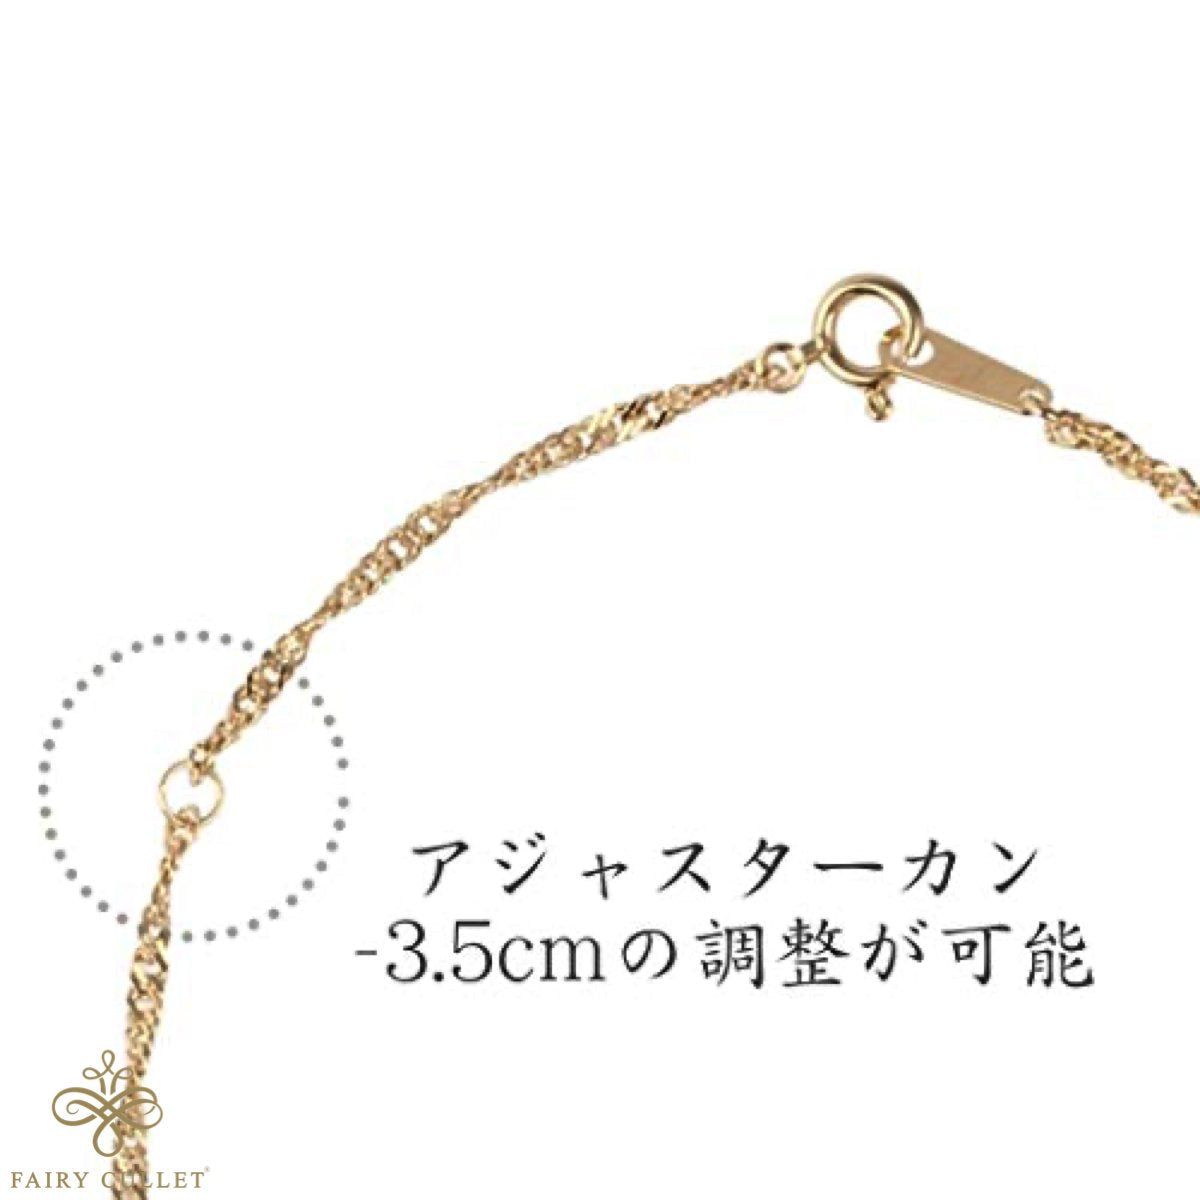 18金ネックレス K18 スクリューチェーン 40cm (幅1.1mm 約1.1g) - 喜平ジュエリーの専門店 FAIRY CULLET(フェアリーカレット)